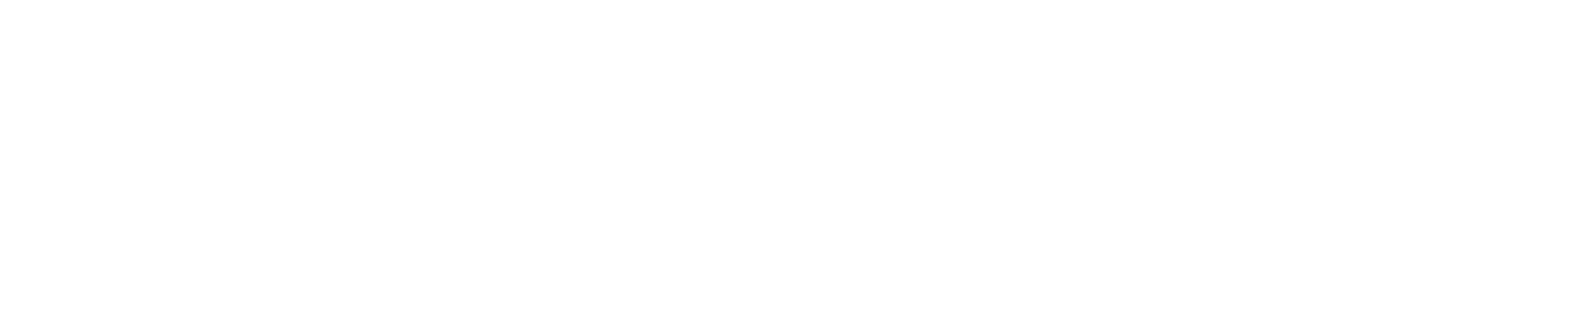 Ceragon Networks logo grand pour les fonds sombres (PNG transparent)